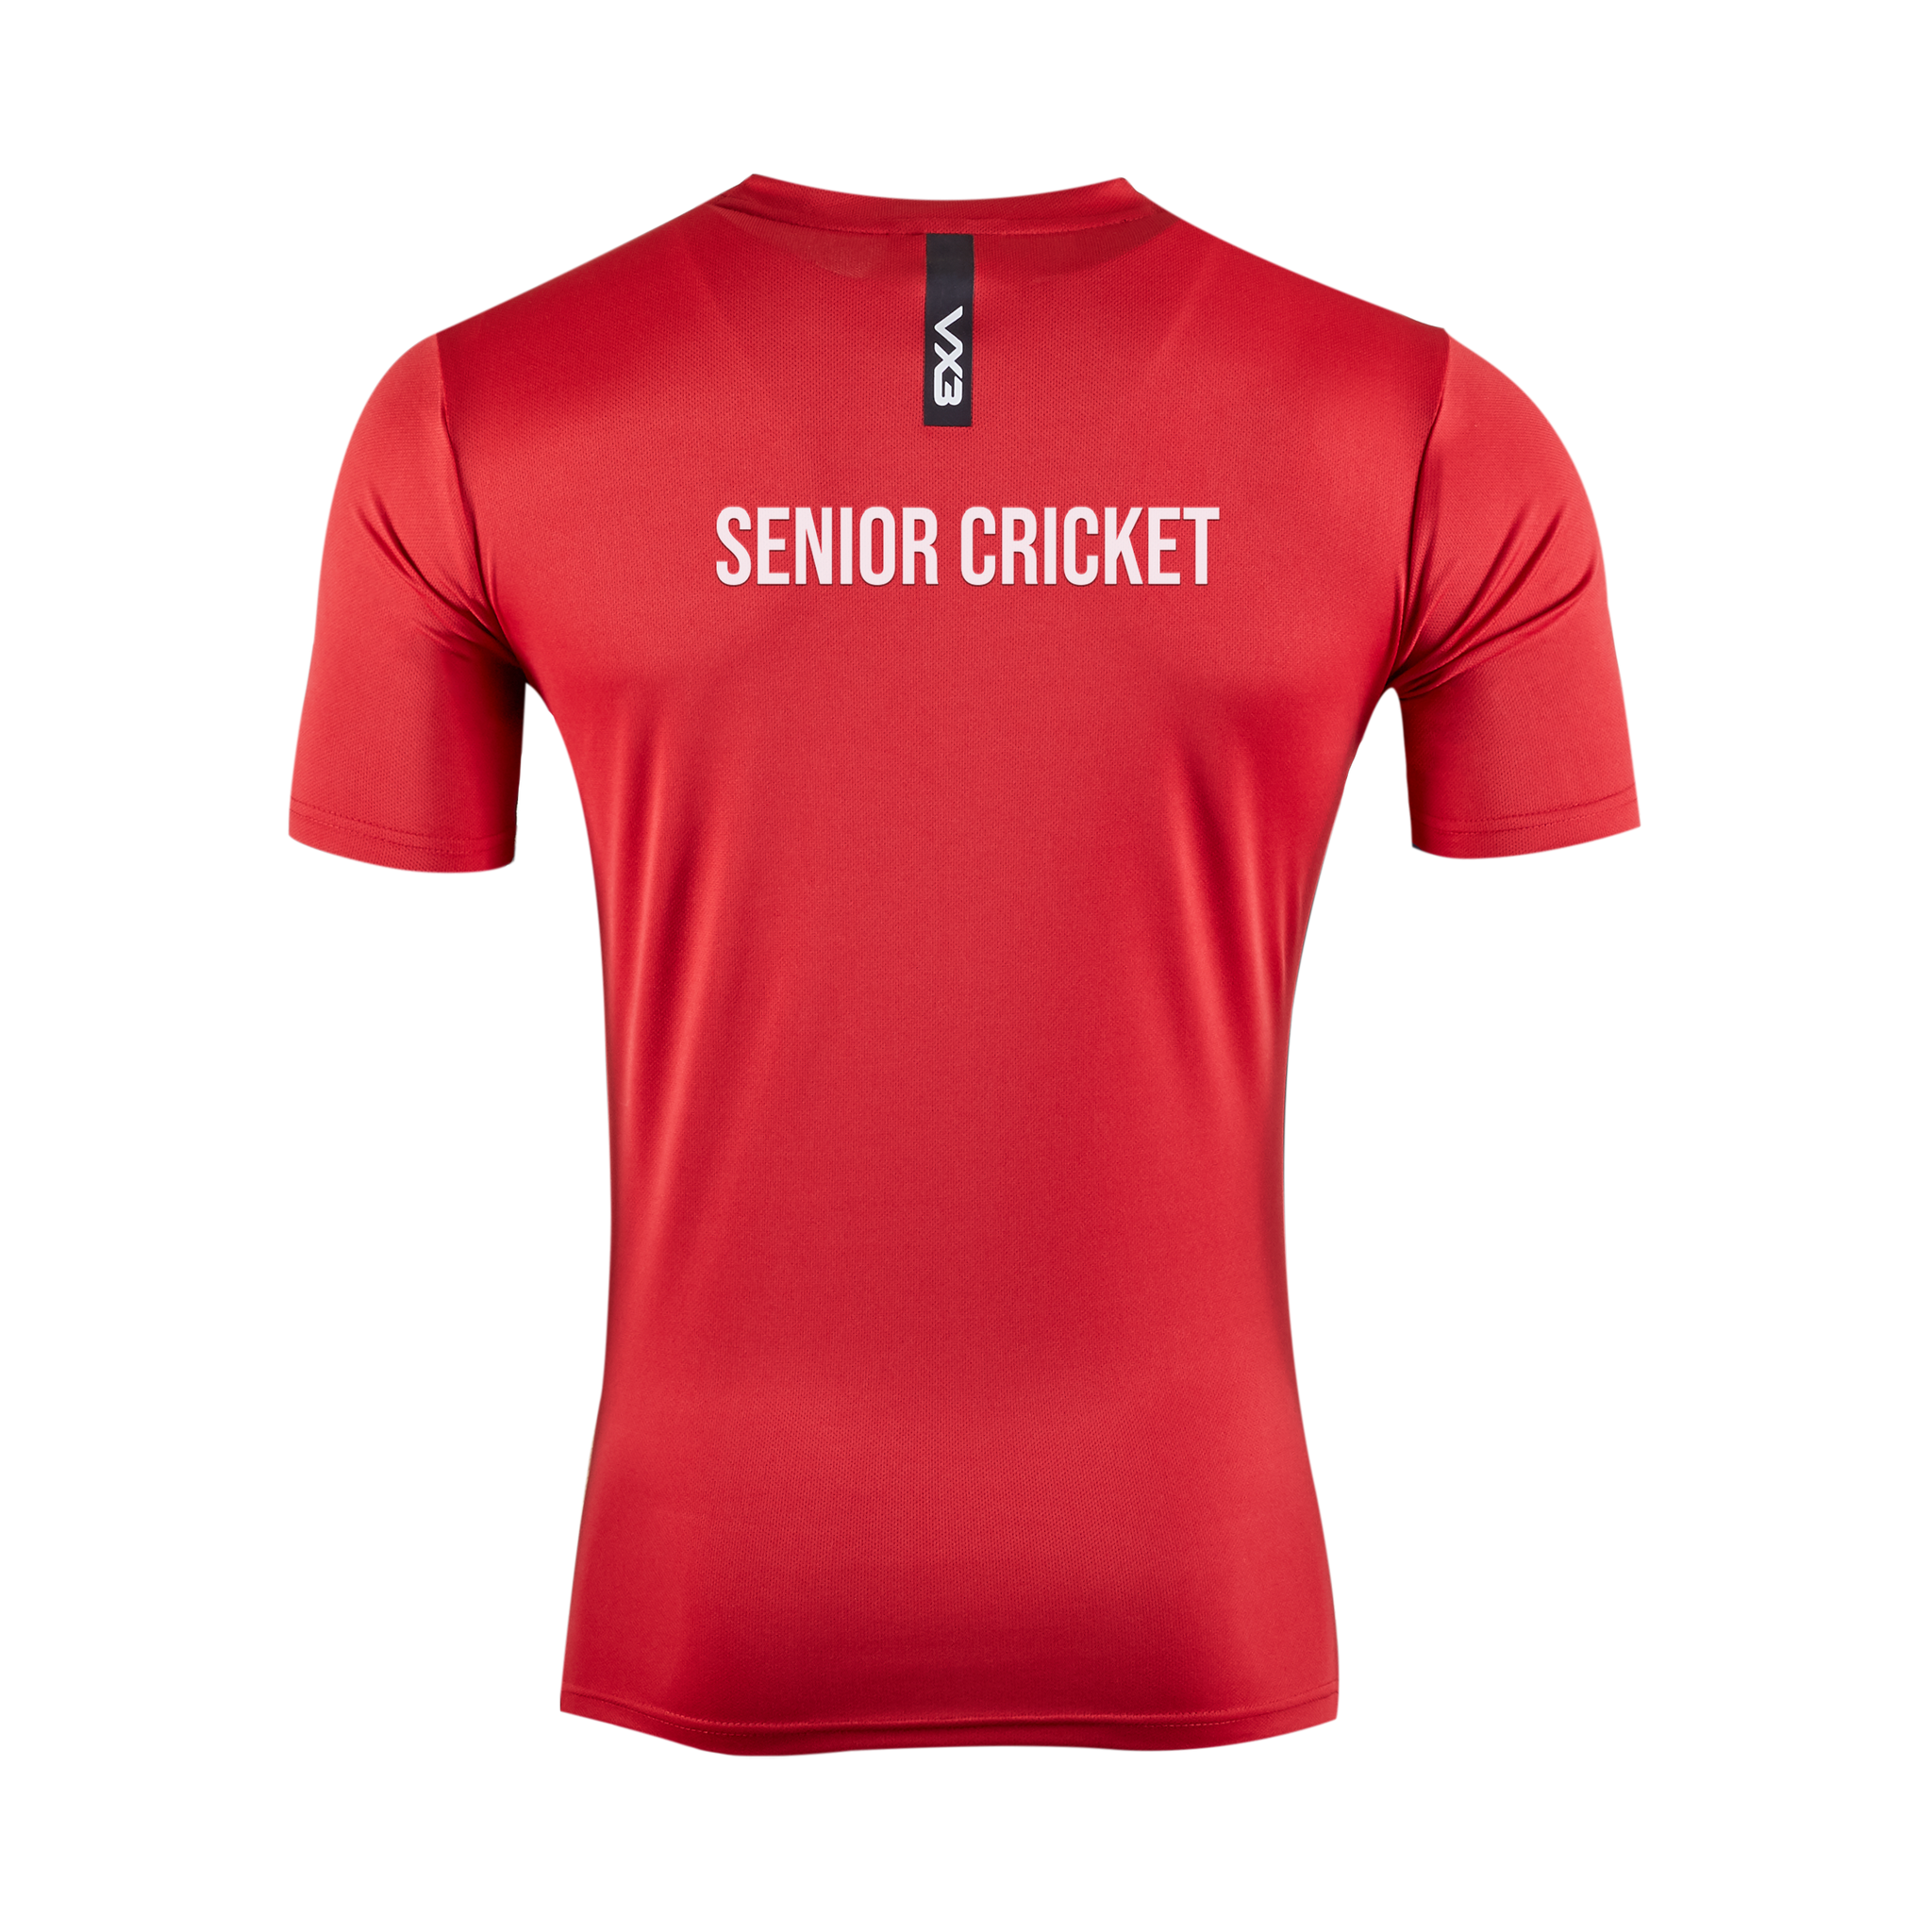 Gravesend Grammar School Senior Cricket Fortis Tee (Red/Black)